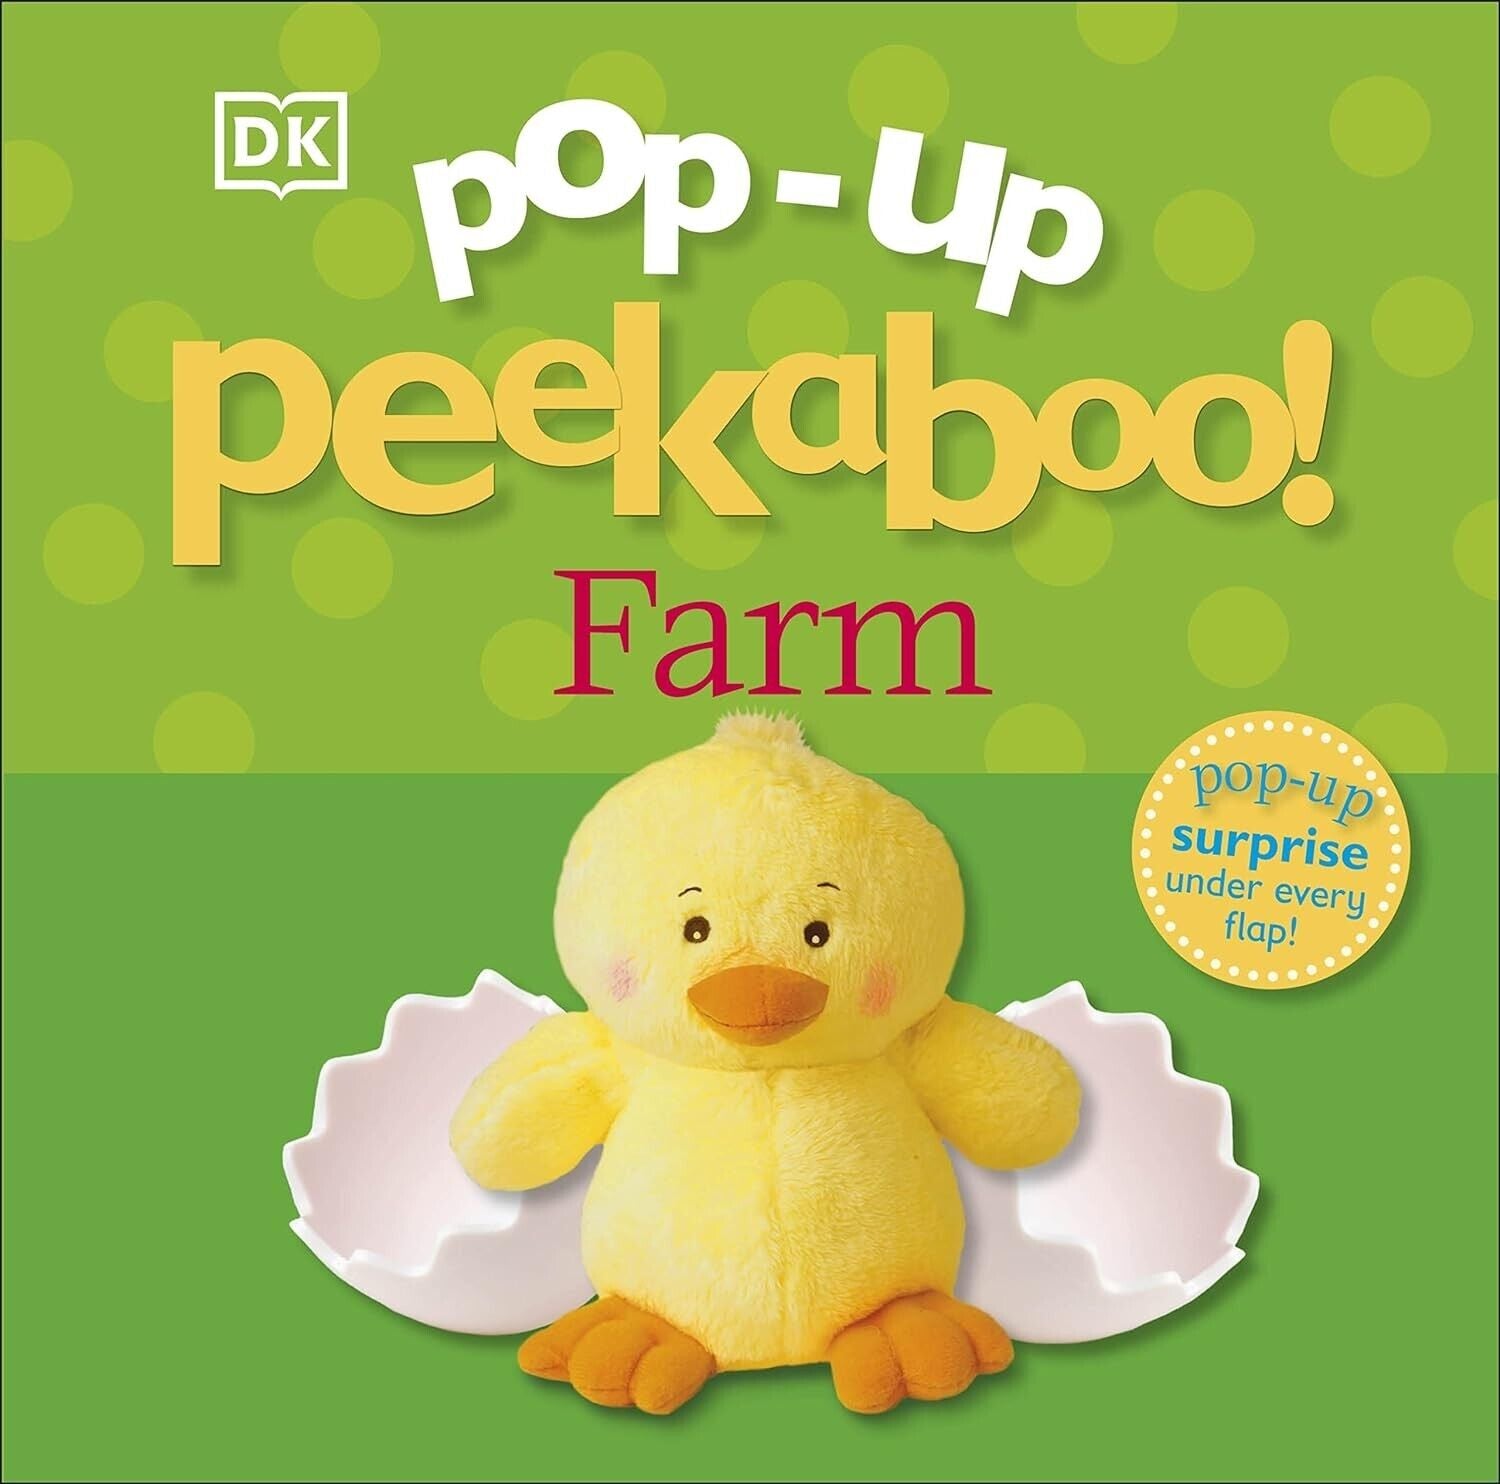 Pop-Up Peekaboo! Farm by DK 9781405362887 Board book - Lets Buy Books